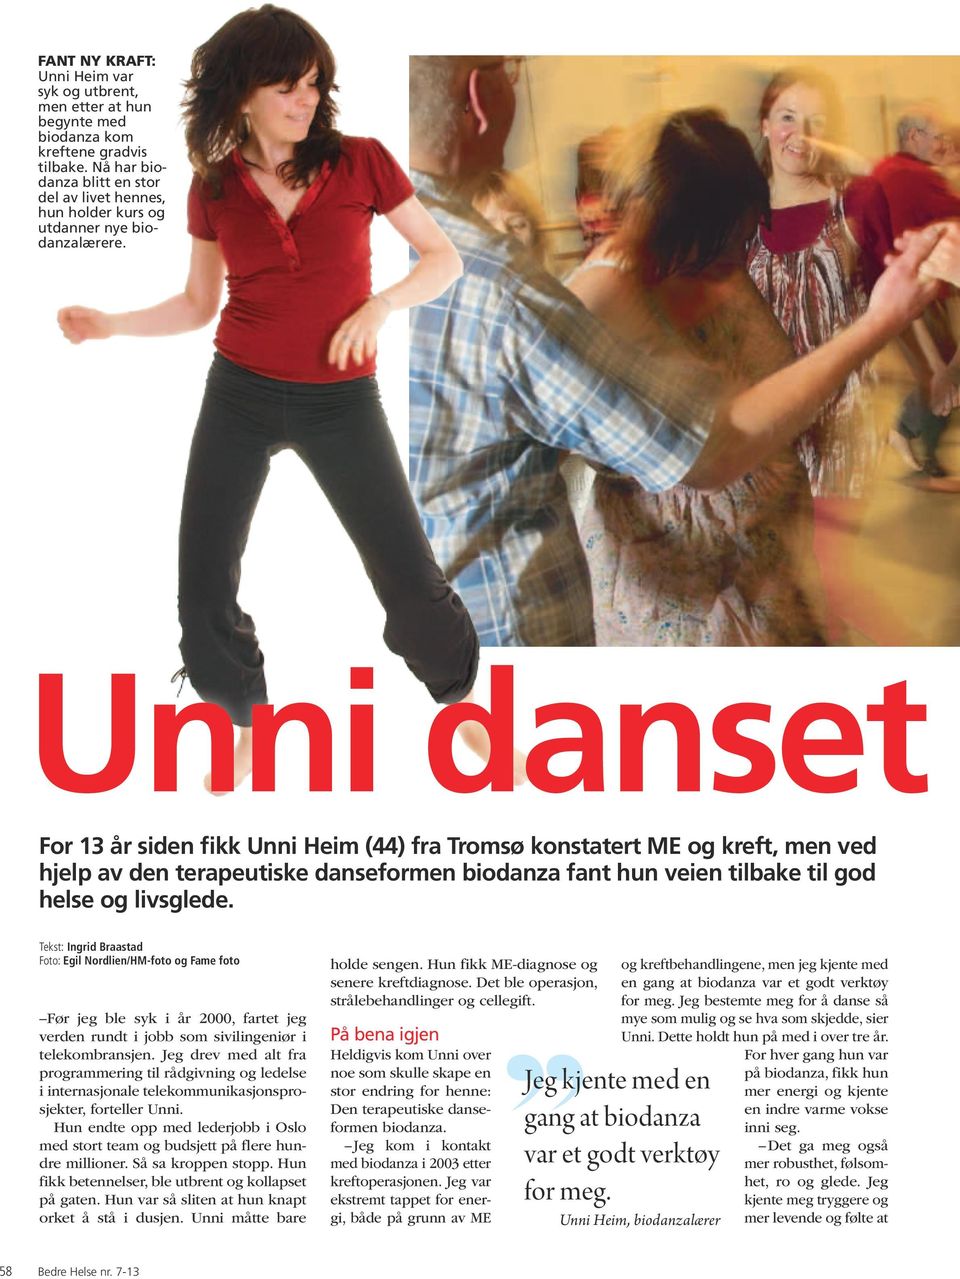 Unni danset For 13 år siden fikk Unni Heim (44) fra Tromsø konstatert ME og kreft, men ved hjelp av den terapeutiske danseformen biodanza fant hun veien tilbake til god helse og livsglede.